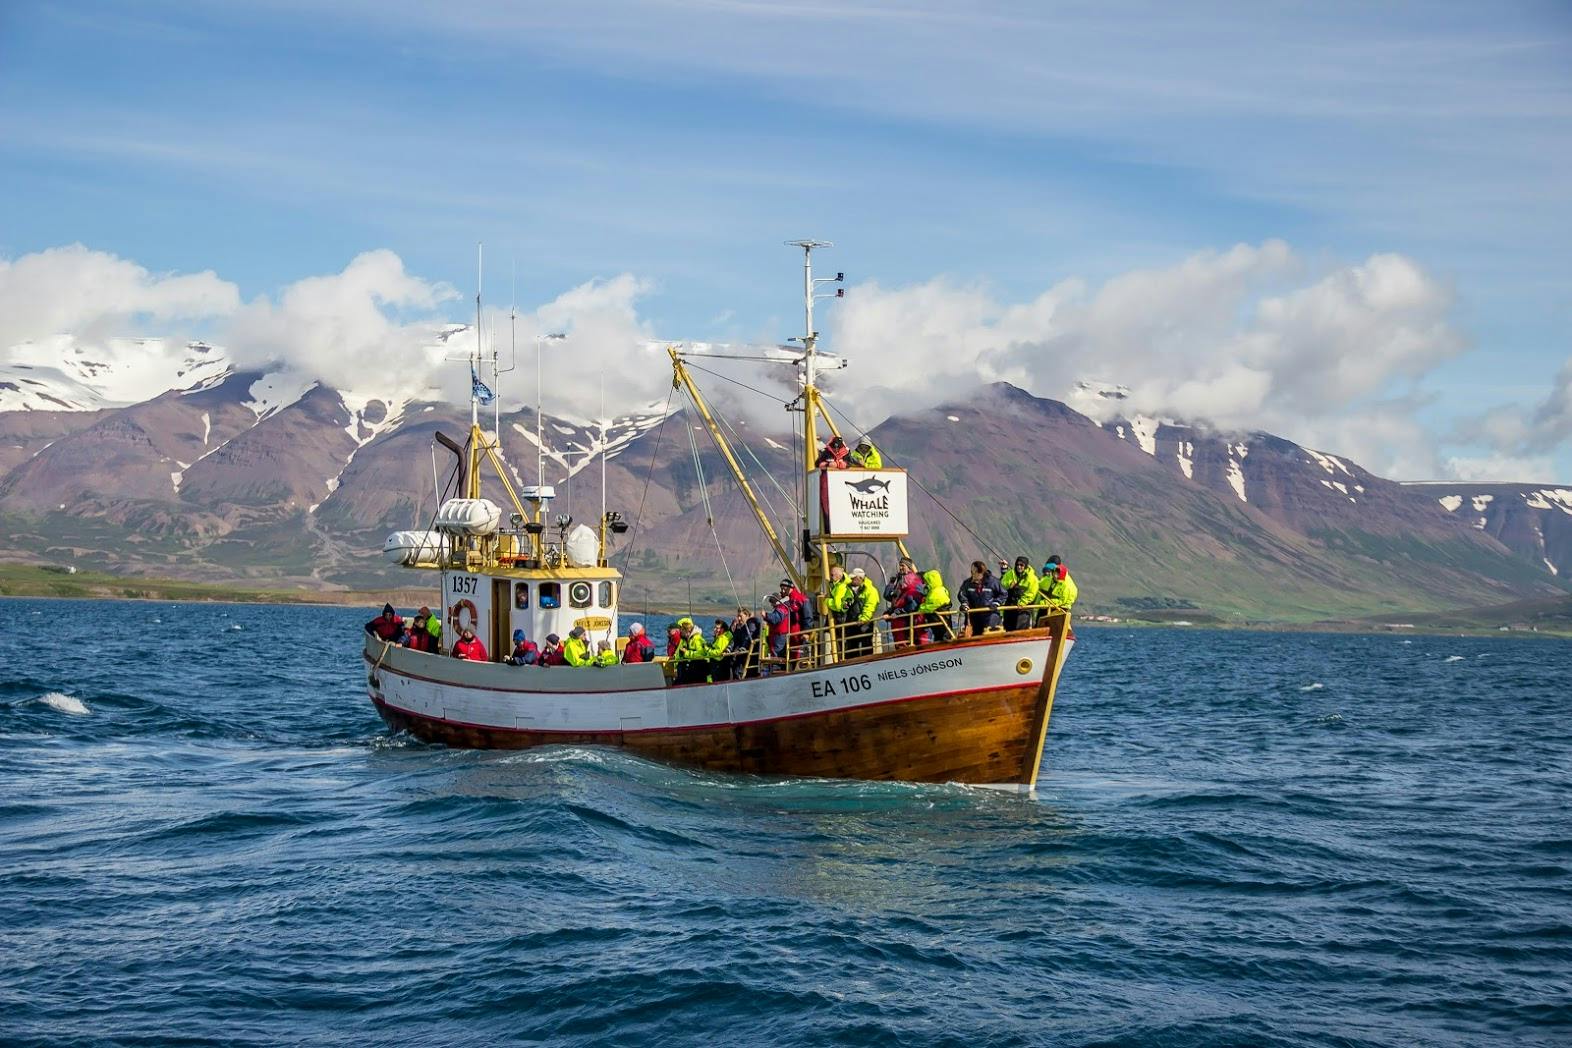 ภาคเหนือของประเทศไอซ์แลนด์นั้นเป็นสถานที่ที่เด็ดในการชมวาฬ และมีโอกาสเห็นได้สูงที่สุด.